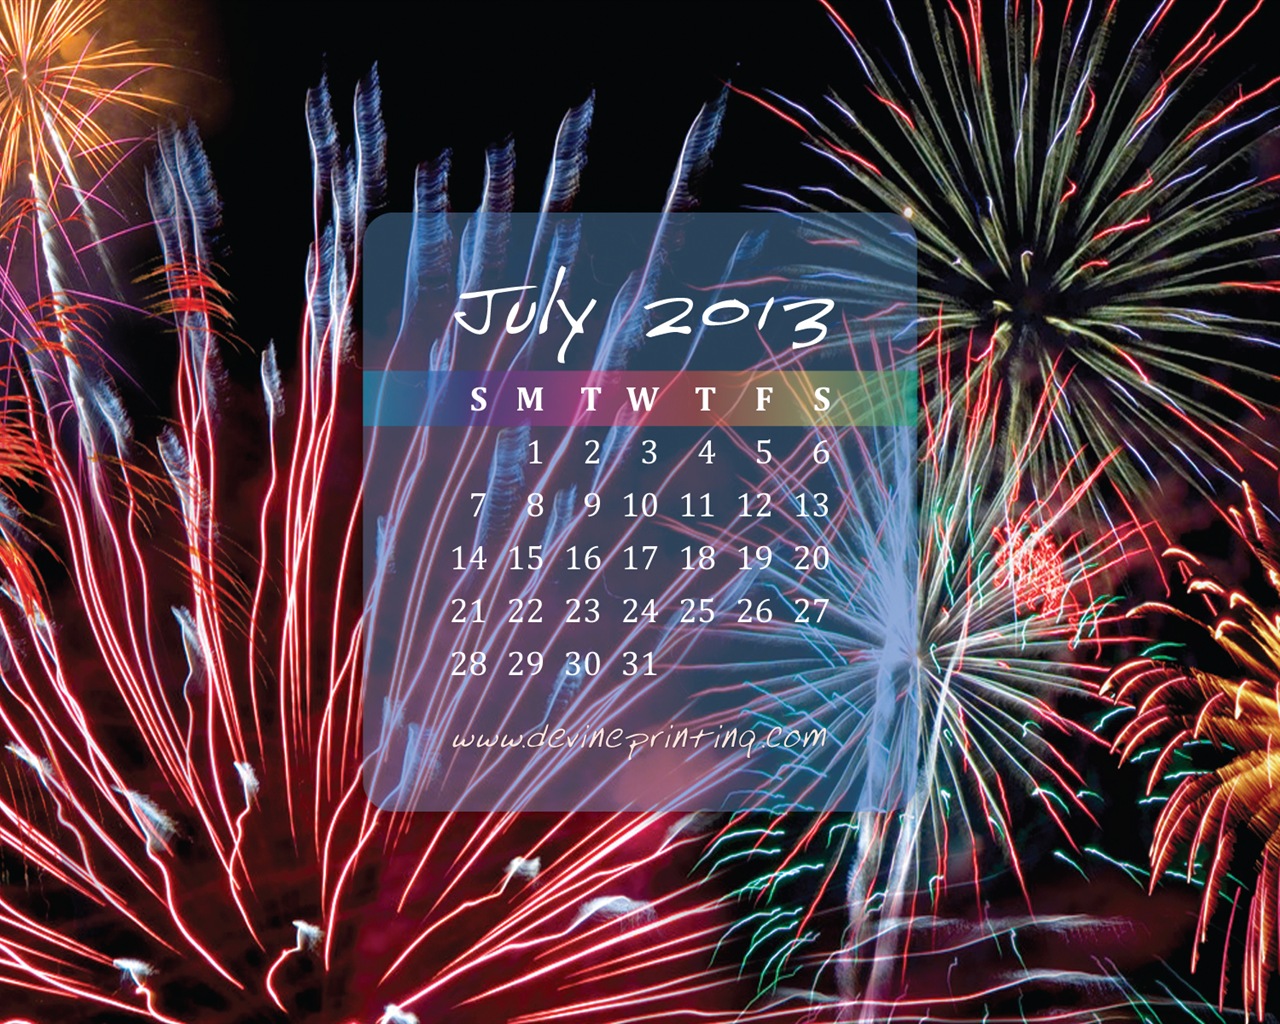 July 2013 calendar wallpaper (2) #14 - 1280x1024